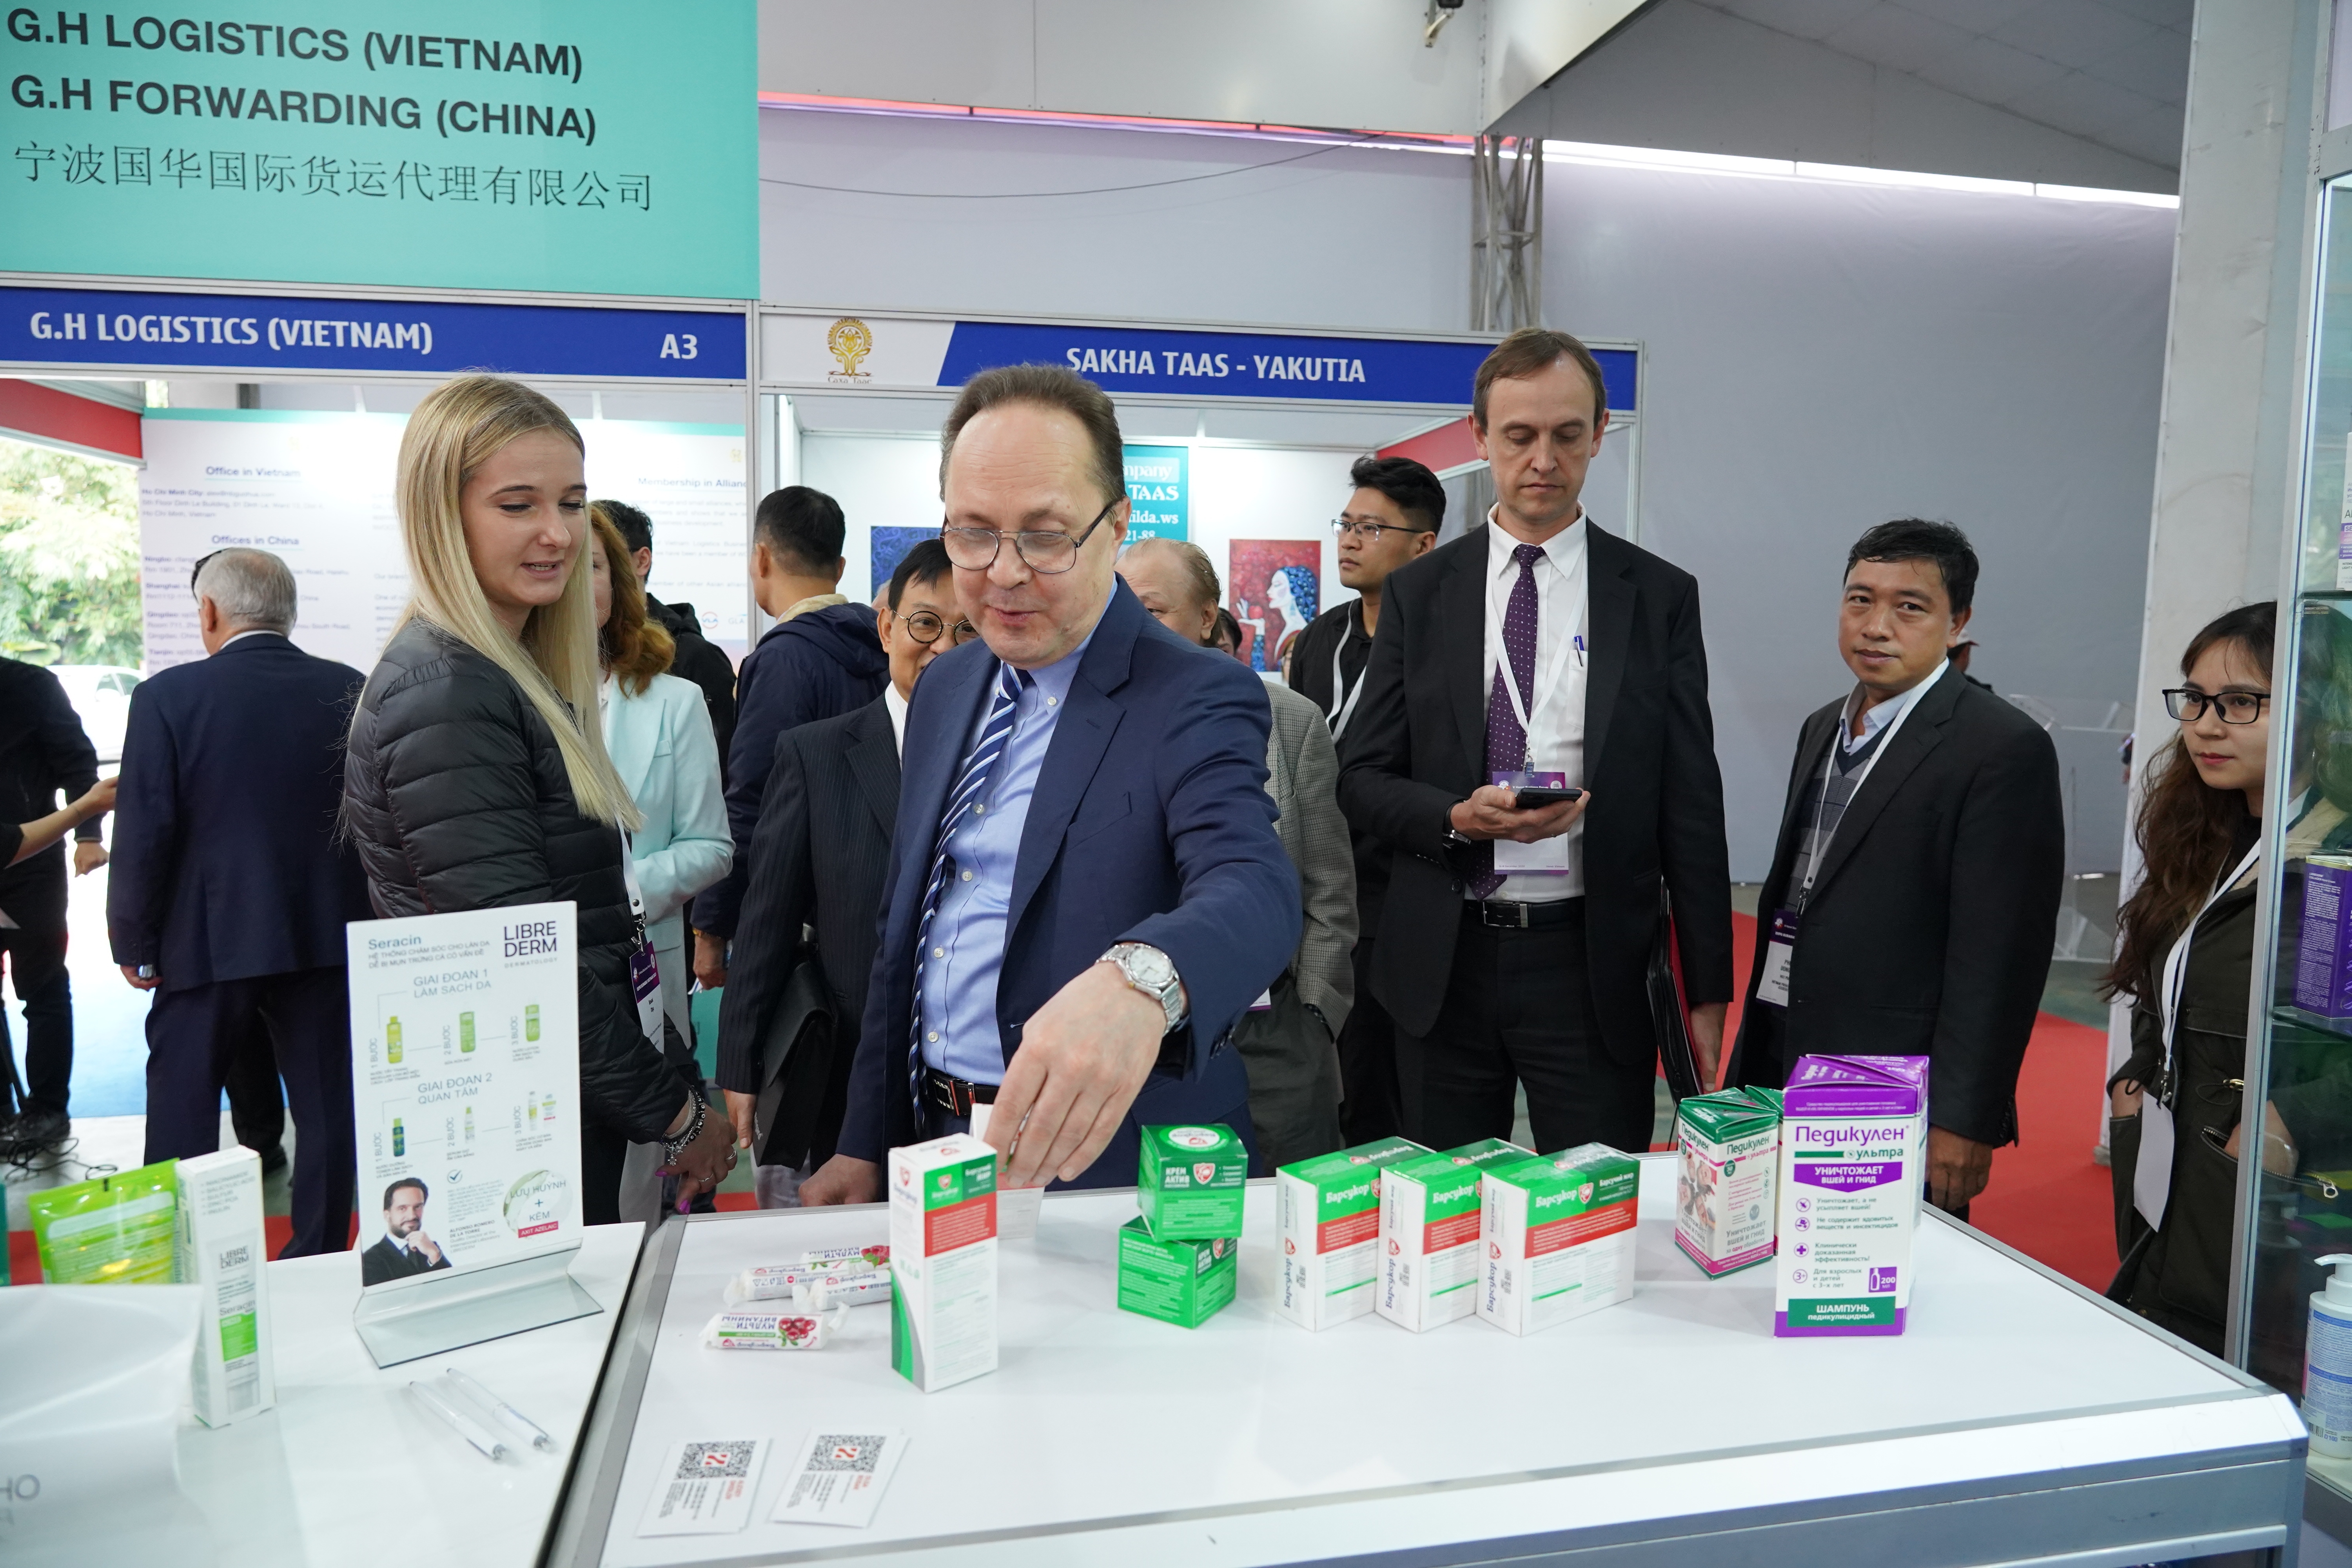 В Ханое проходит 5-я российско-вьетнамская промышленная выставка